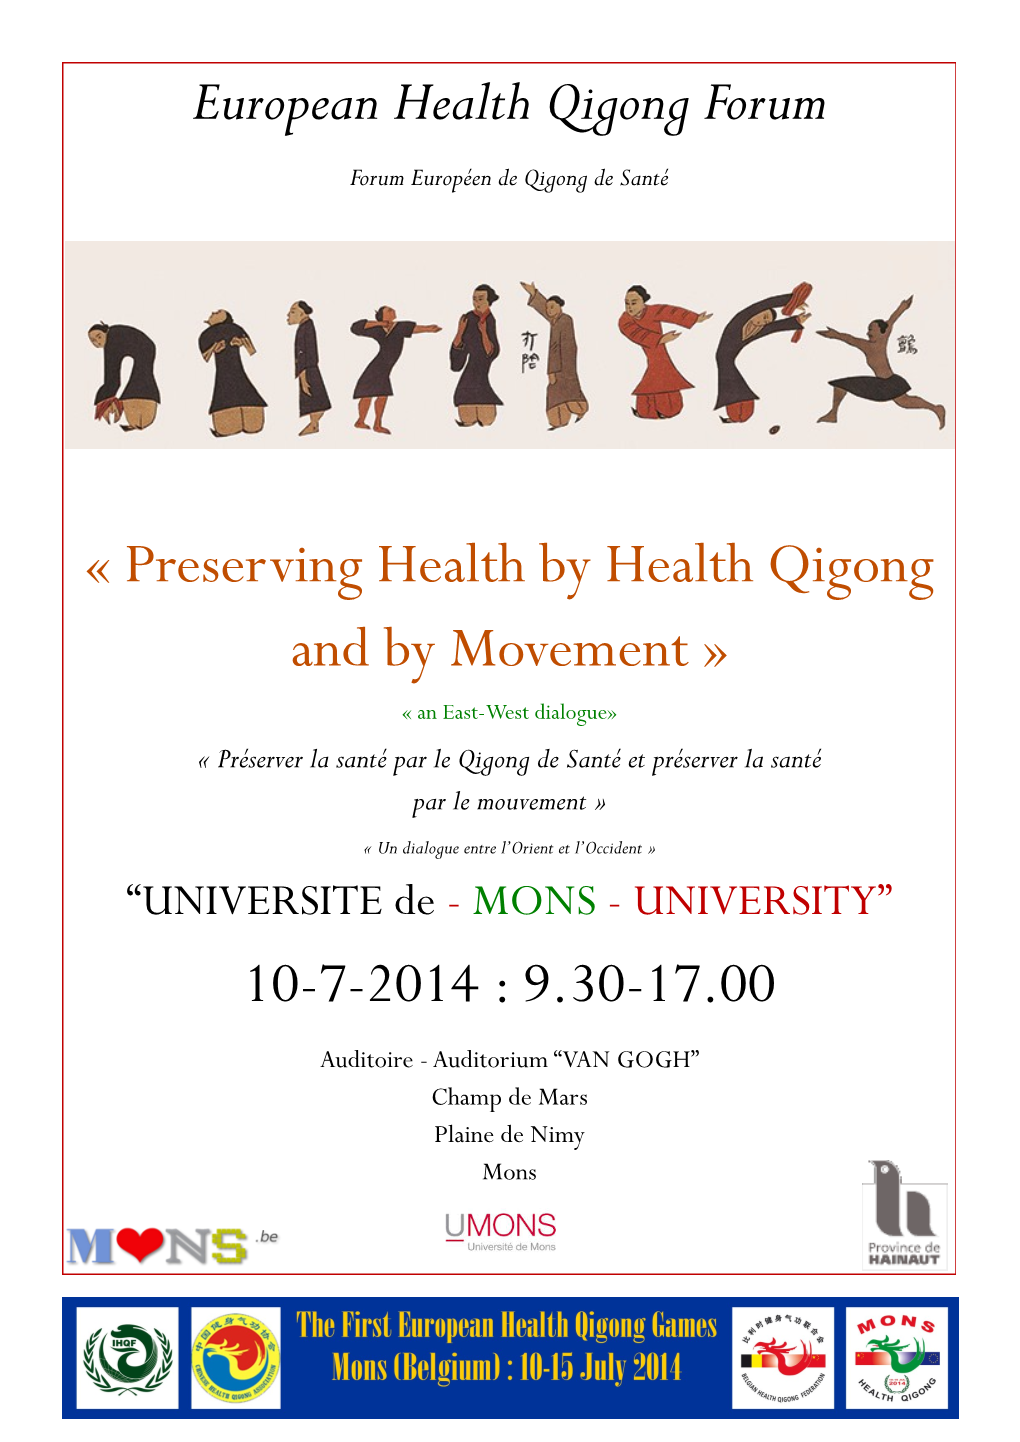 European Health Qigong Forum